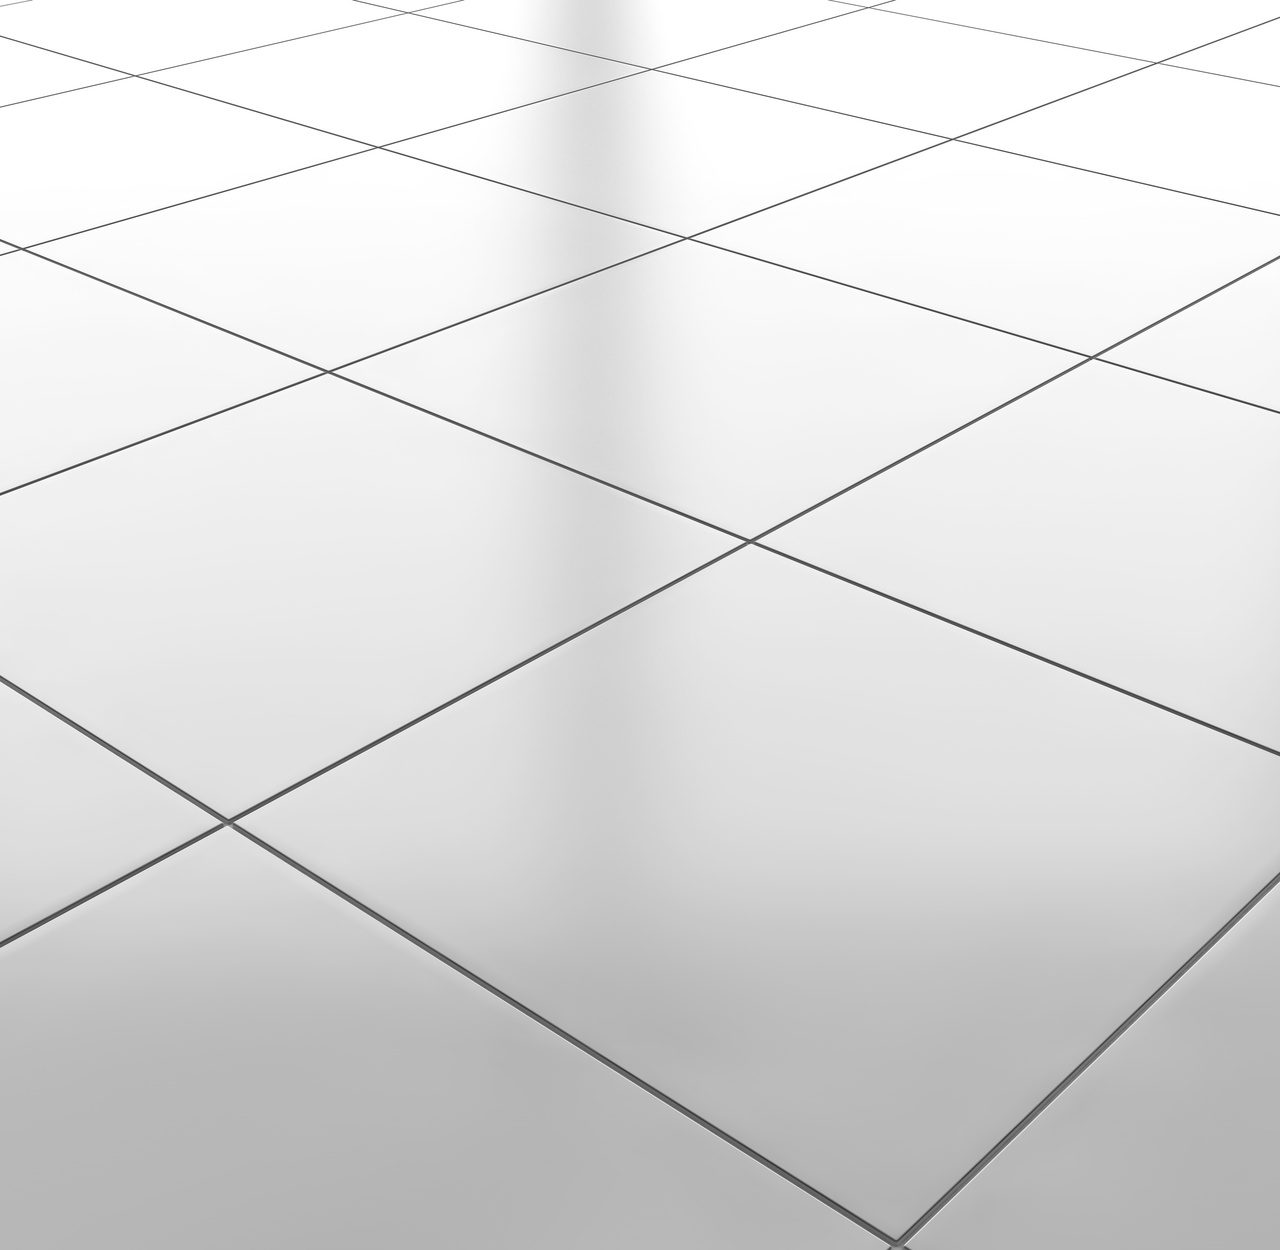 White glossy ceramic tile floor pattern background. 3d rendering